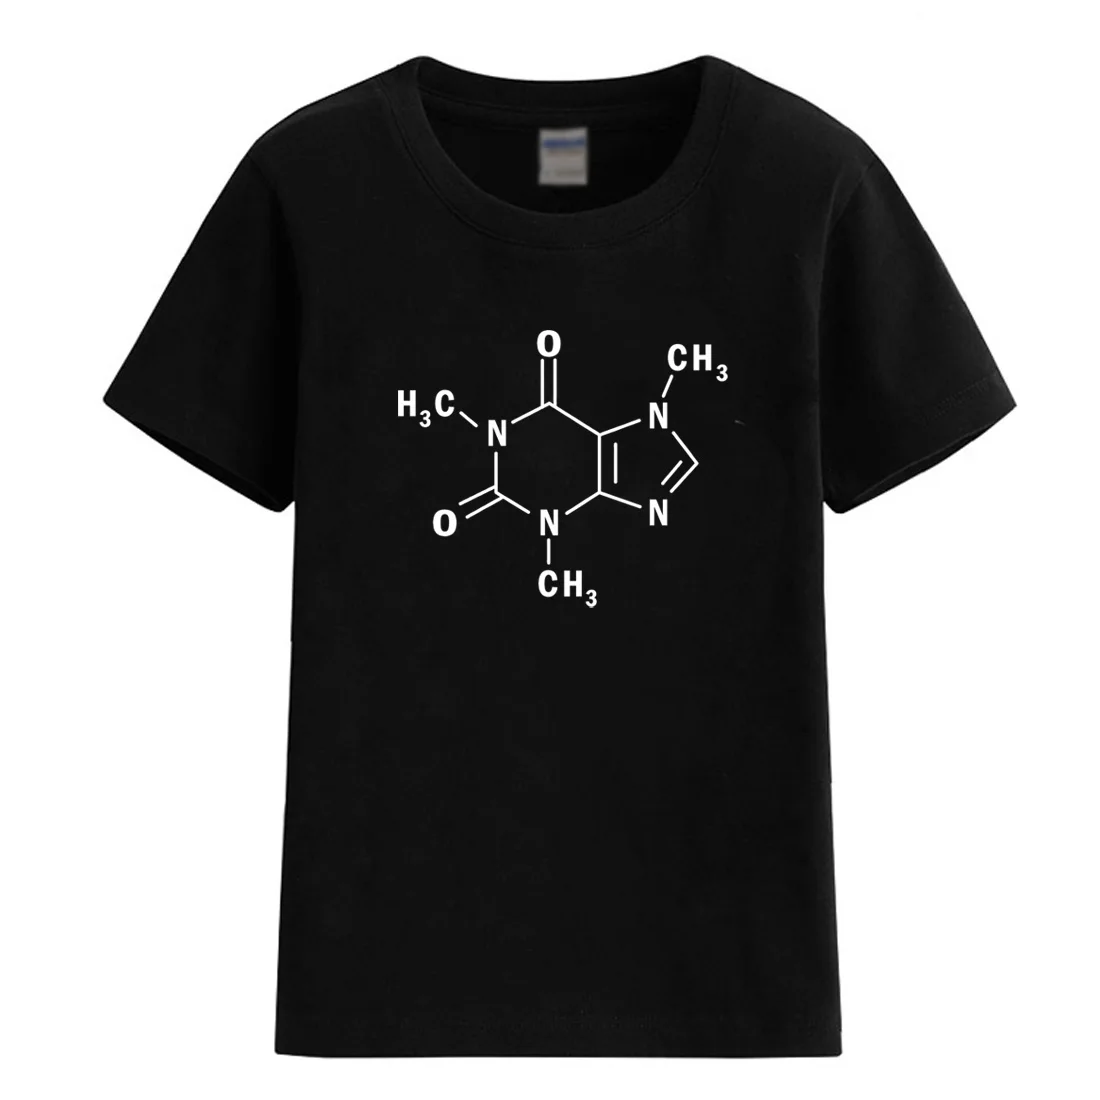 2018 детская футболка летние Теория большого взрыва знаменитые футболки для девочек кофеина Валовая формула Шелдон футболка для мальчиков